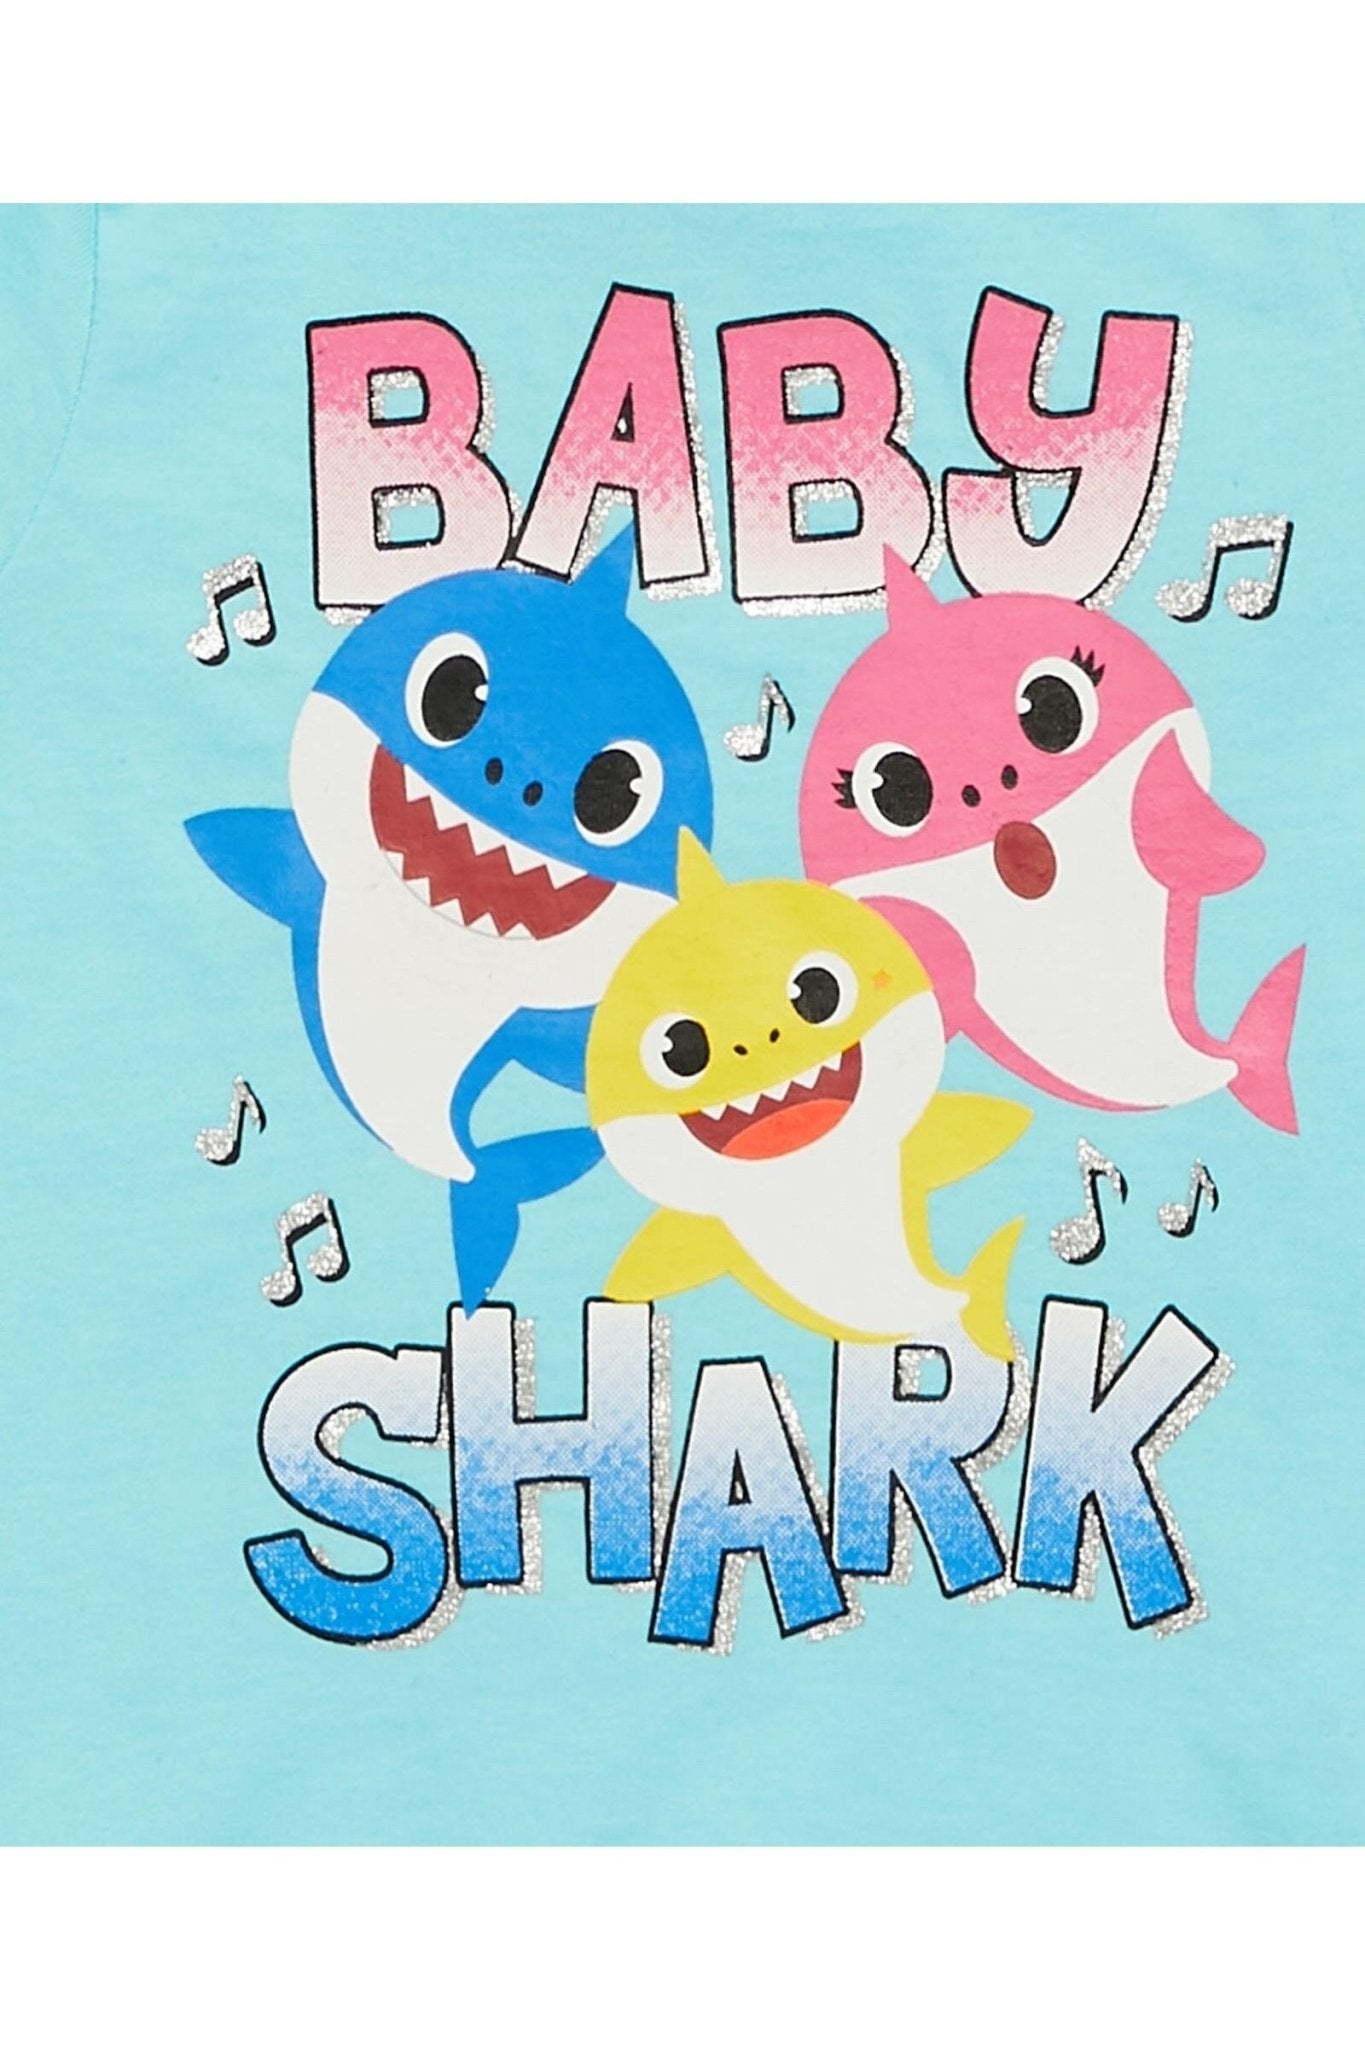 Baby Shark 3 Pack Graphic T-Shirt - imagikids